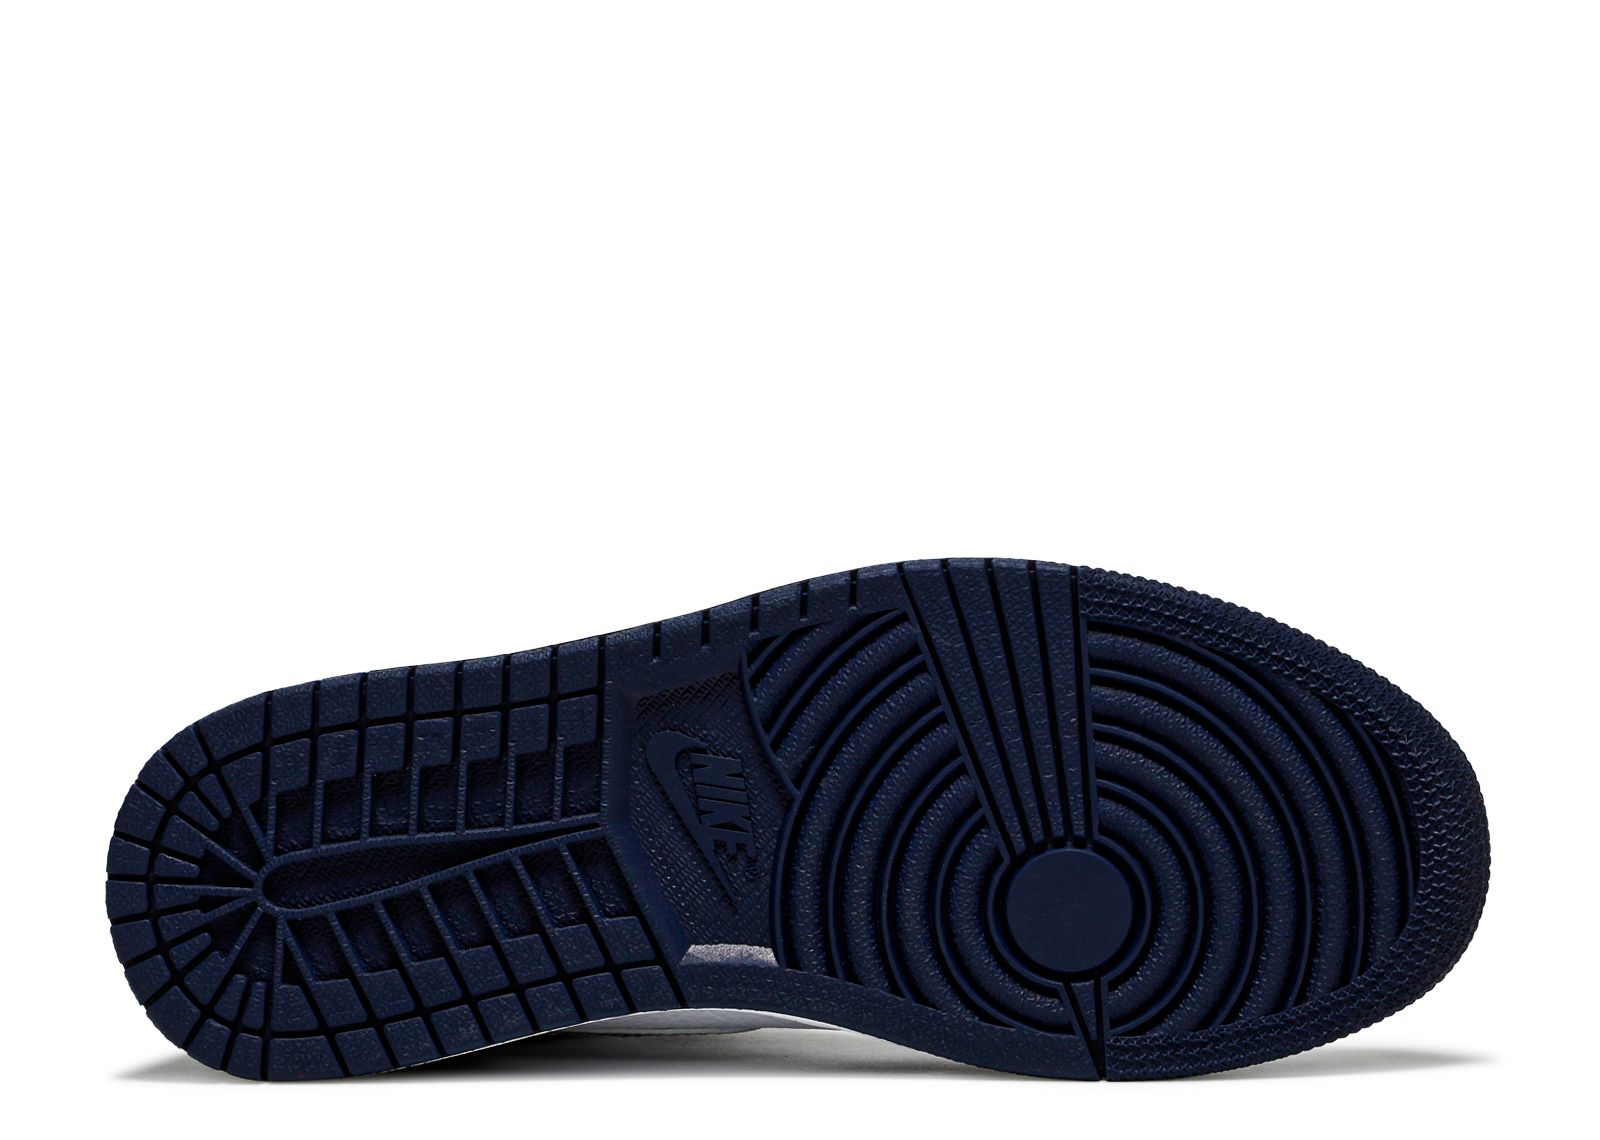 Nike AJ1 High OG CO.JP Midnight Navy スニーカー 靴 メンズ 美しい